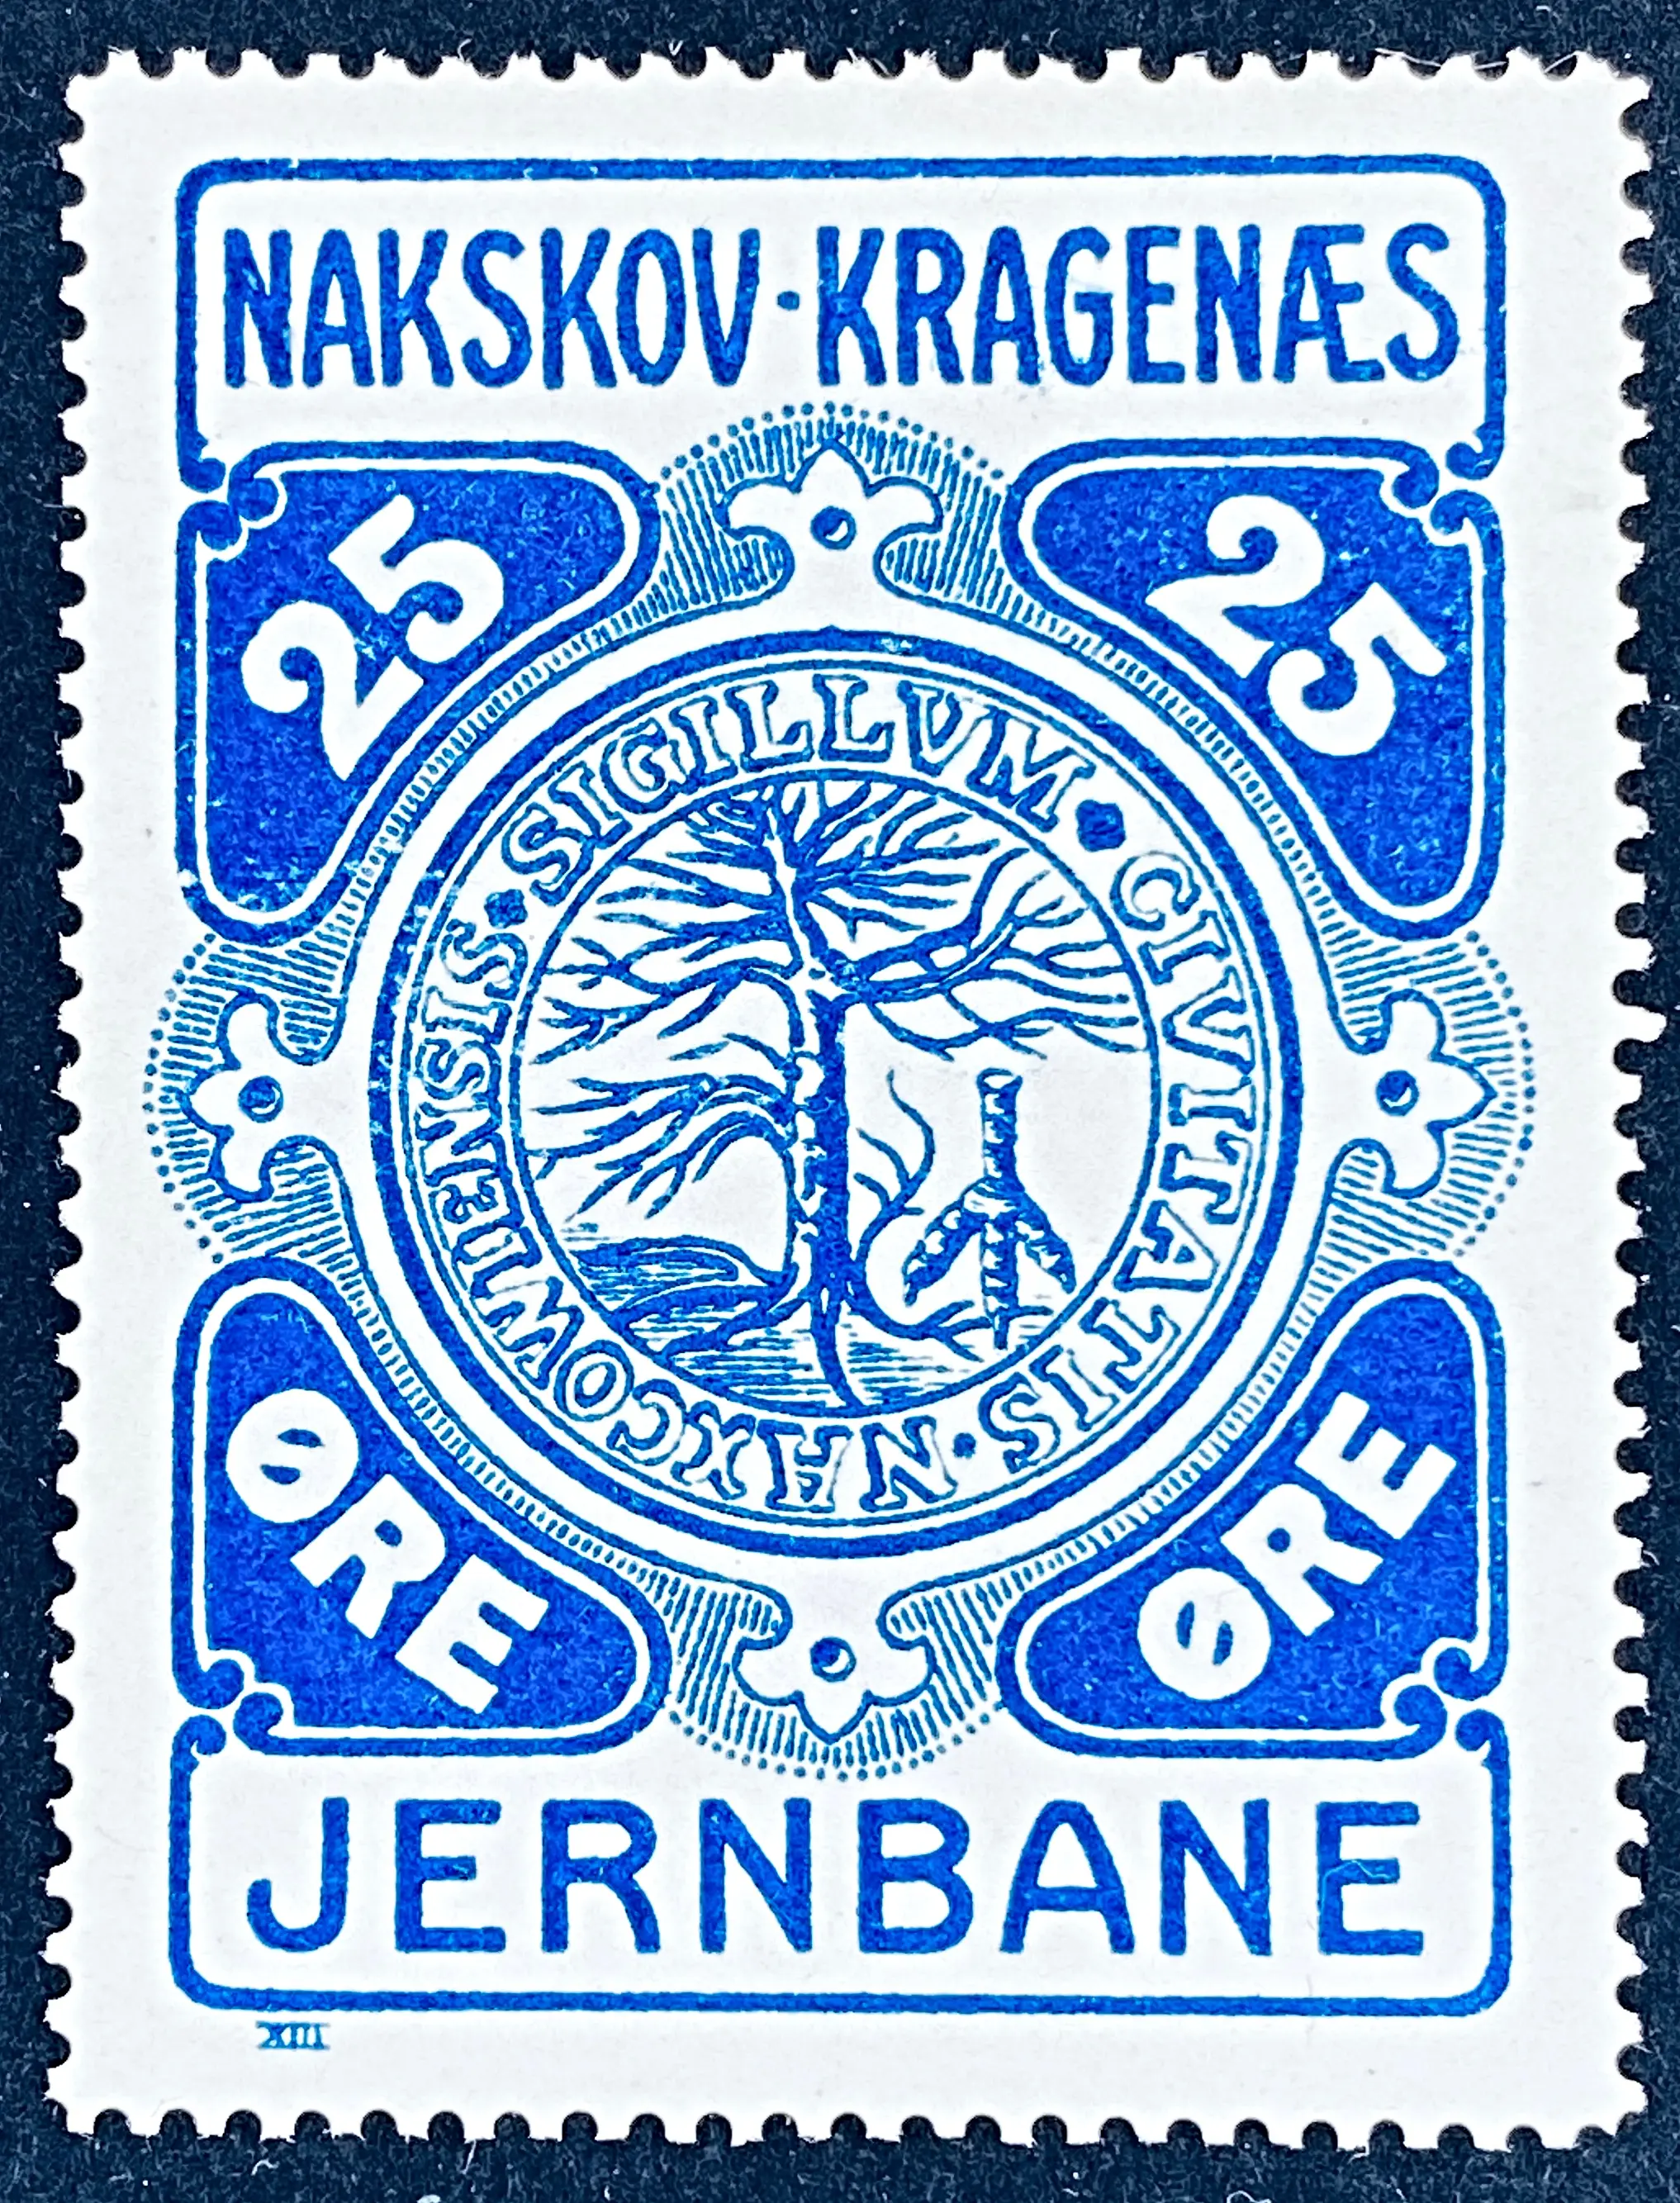 NKJ 1 - 25 Øre - Blå.